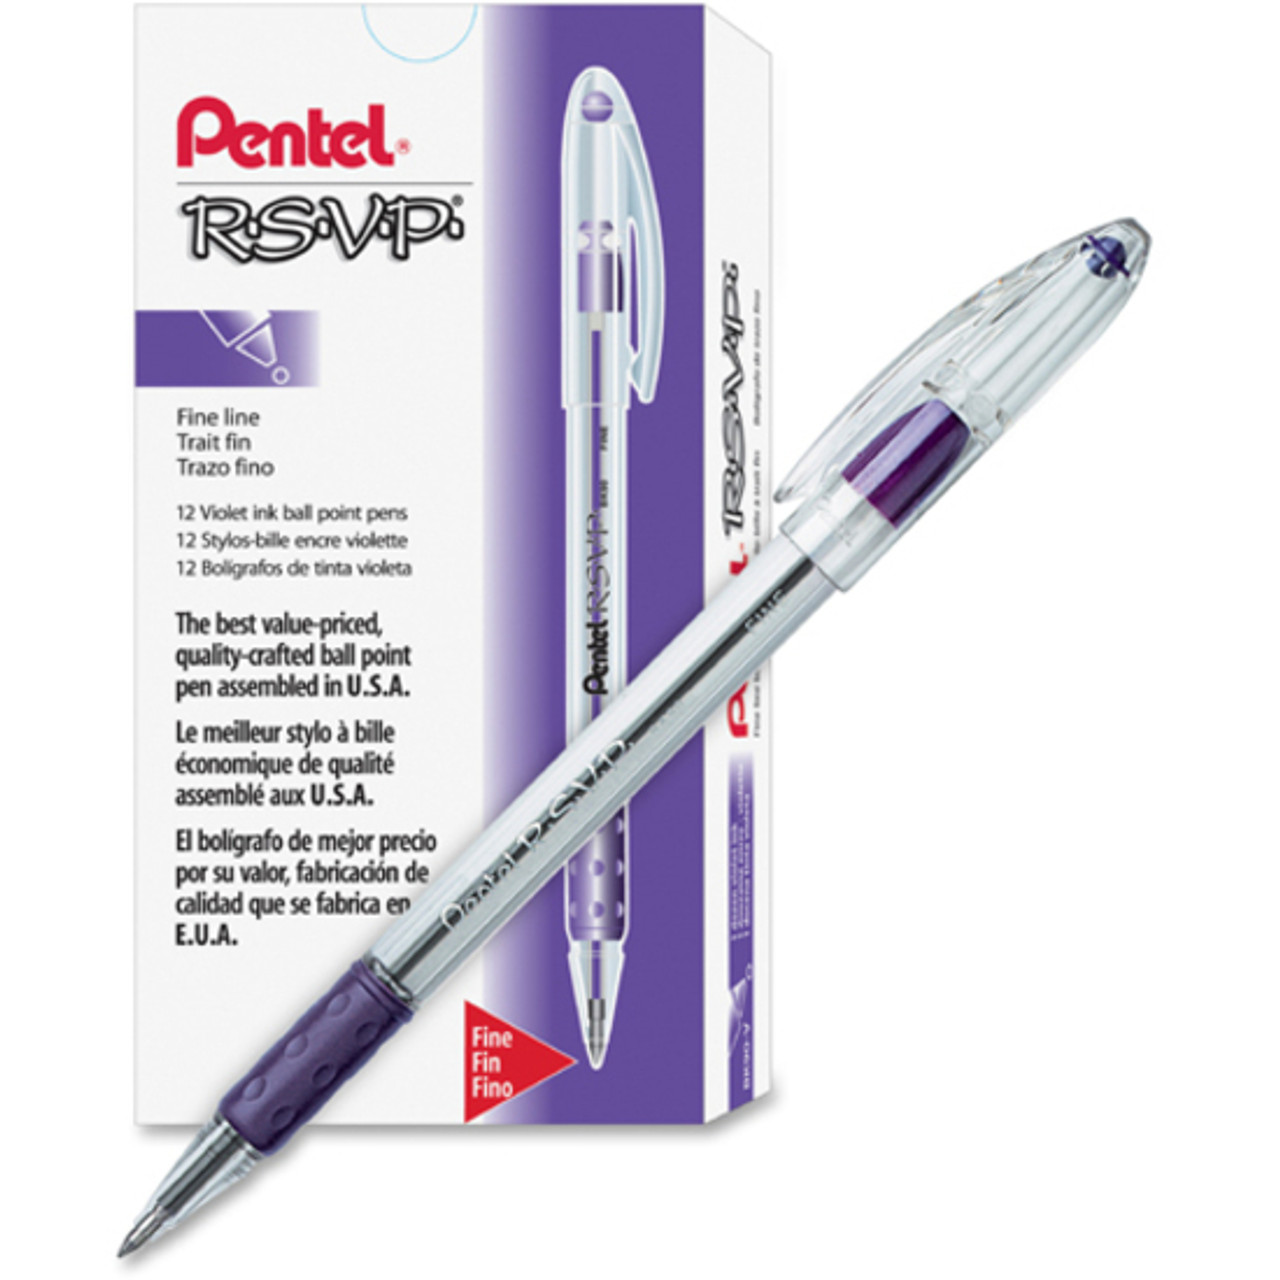 Pentel RSVP Stick Pen - Fine Pen Point Type - Violet Ink - Clear Barrel (bk90v)